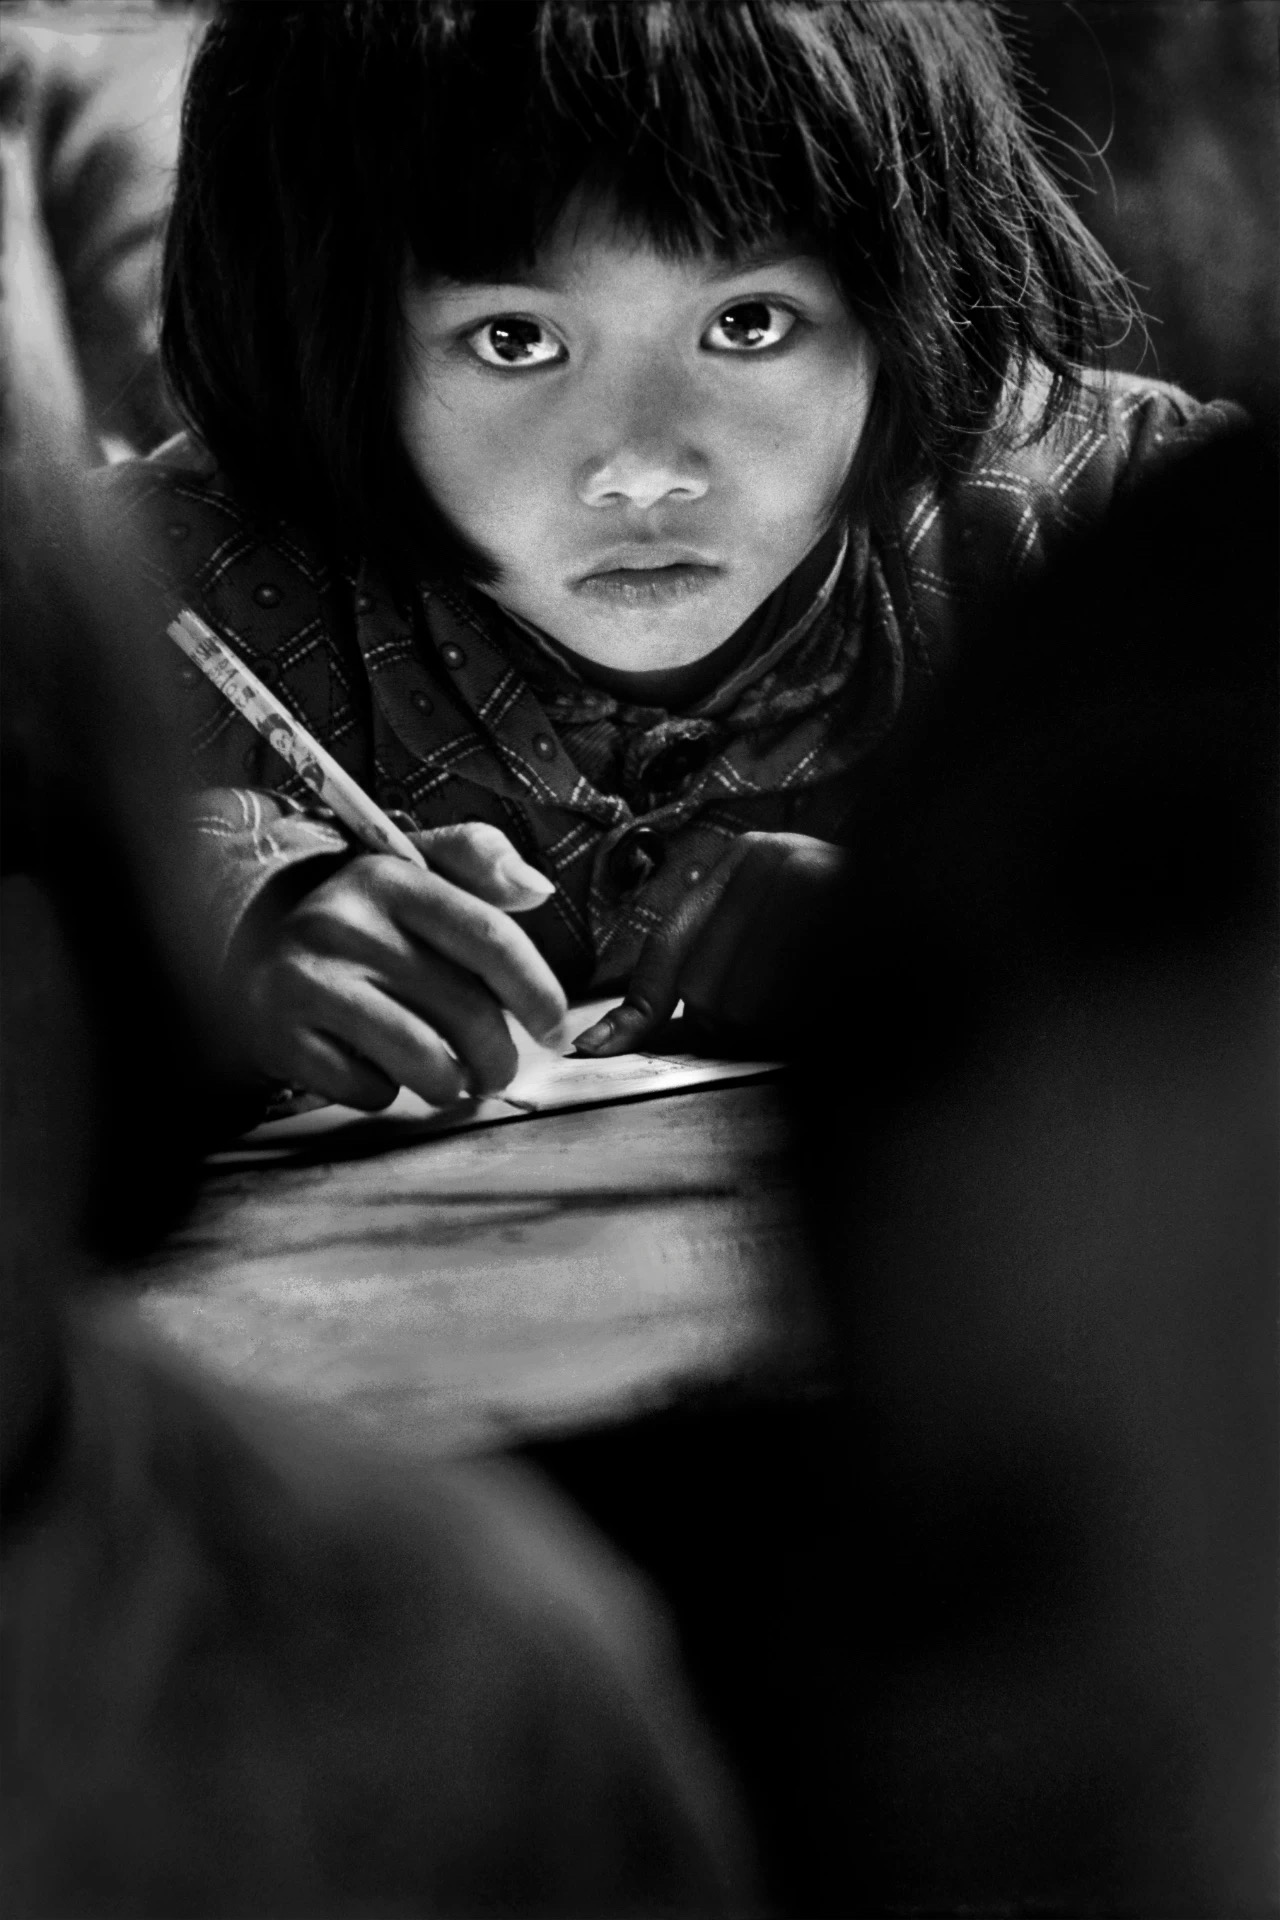 可怜的女孩 图库摄影片. 图片 包括有 阳光, 无辜, 童年, 白天, 破擦声, 子项, 微笑, 阿拉伯人 - 57781112